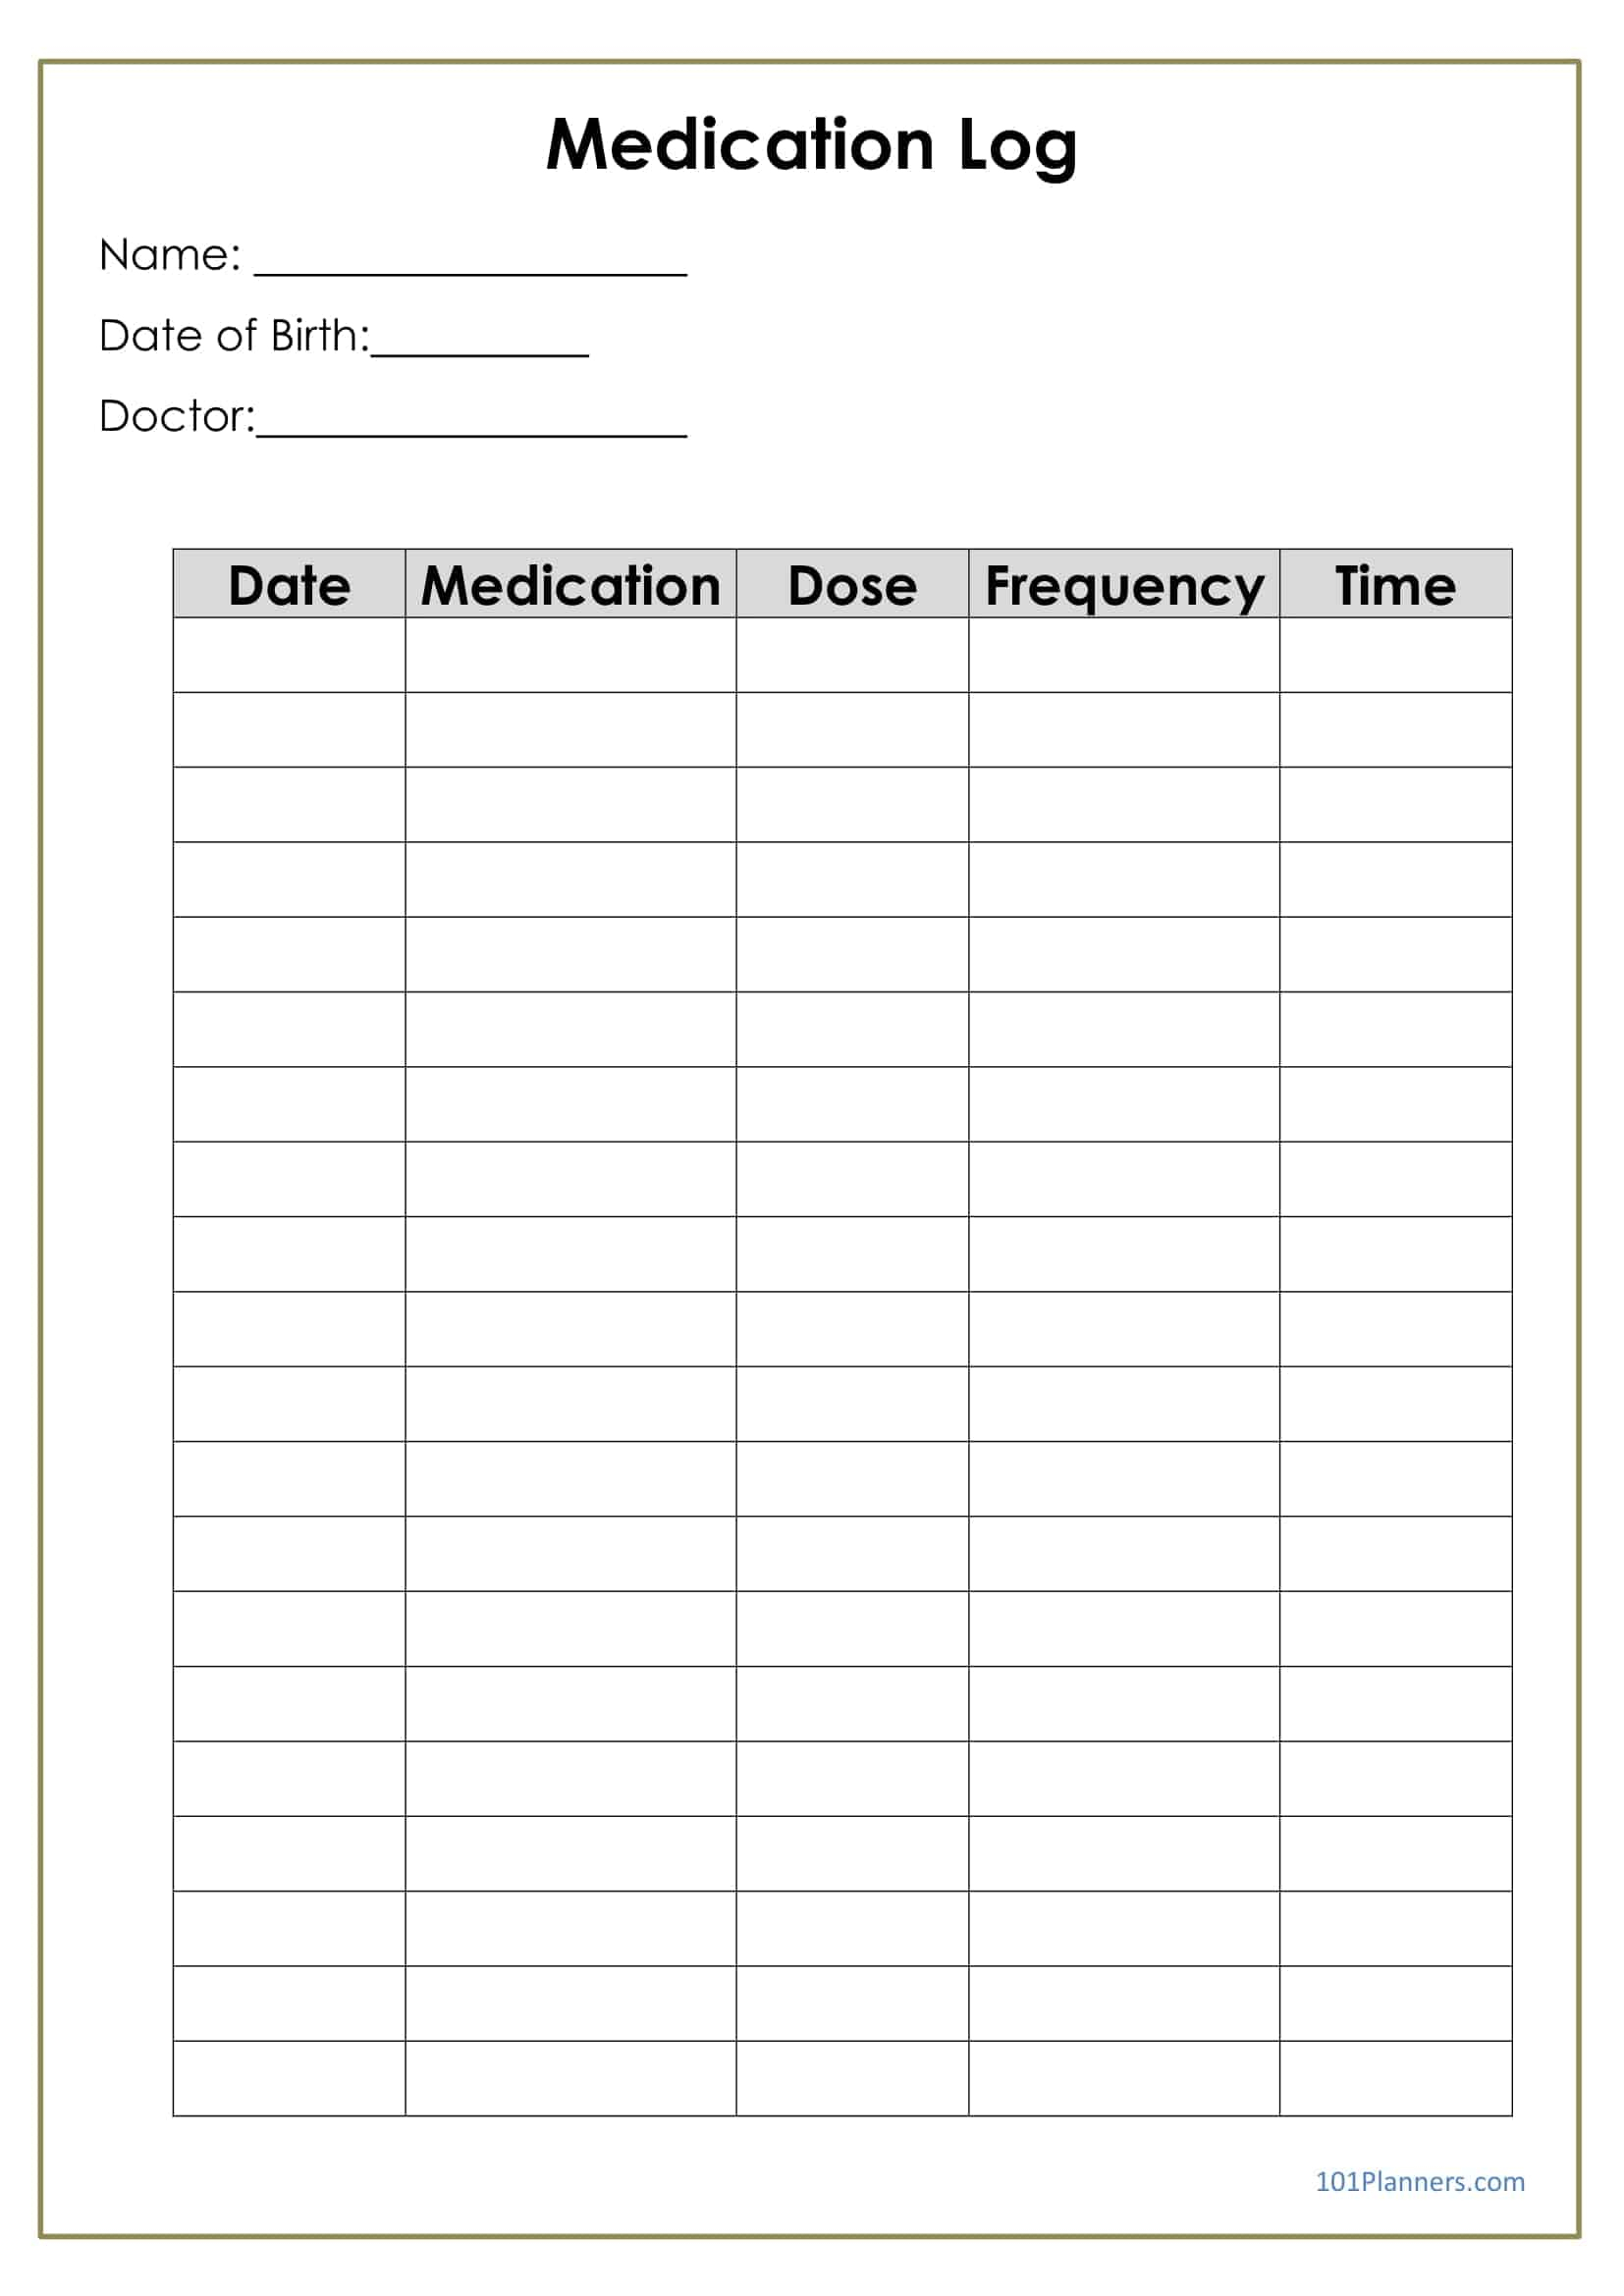 Medication Log - Free Printable Medication Log Sheet